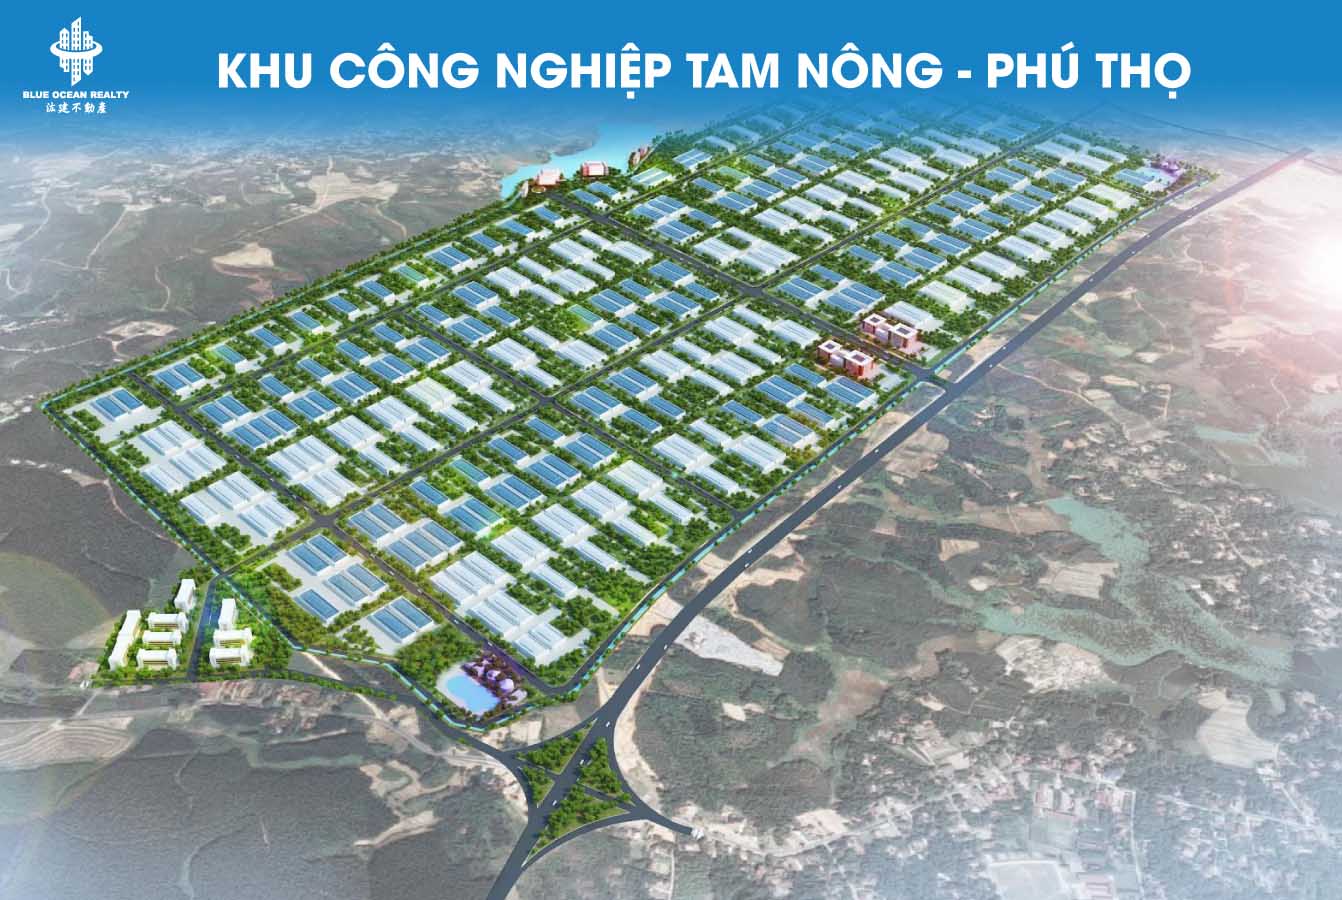 Khu công nghiệp (KCN) Tam Nông tỉnh Phú Thọ